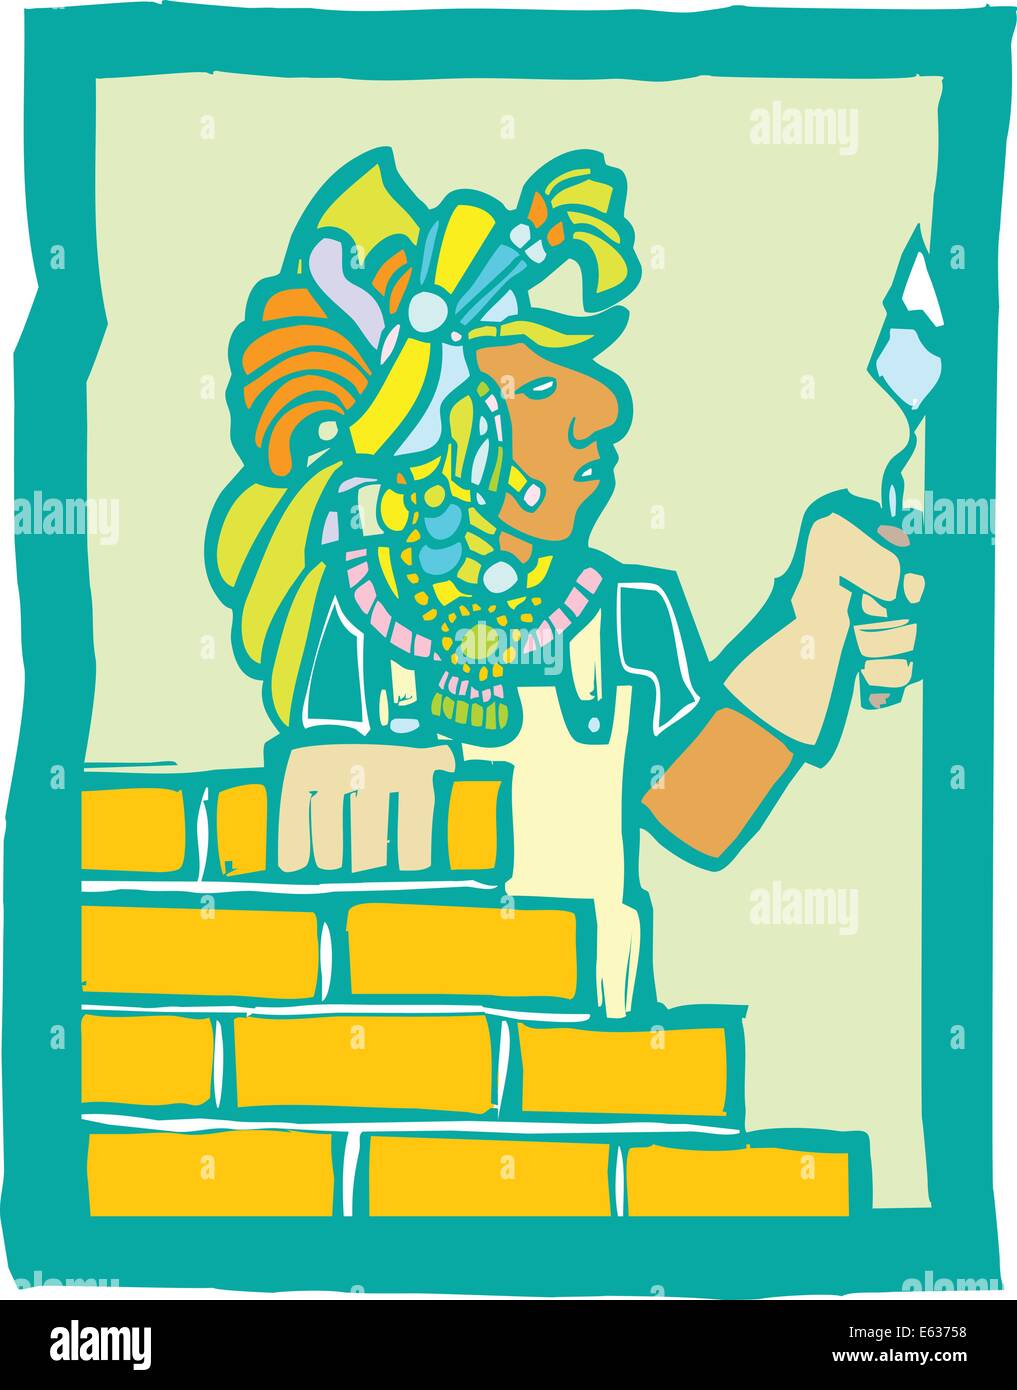 Mayan Temple style image of a mason laying bricks Stock Vector